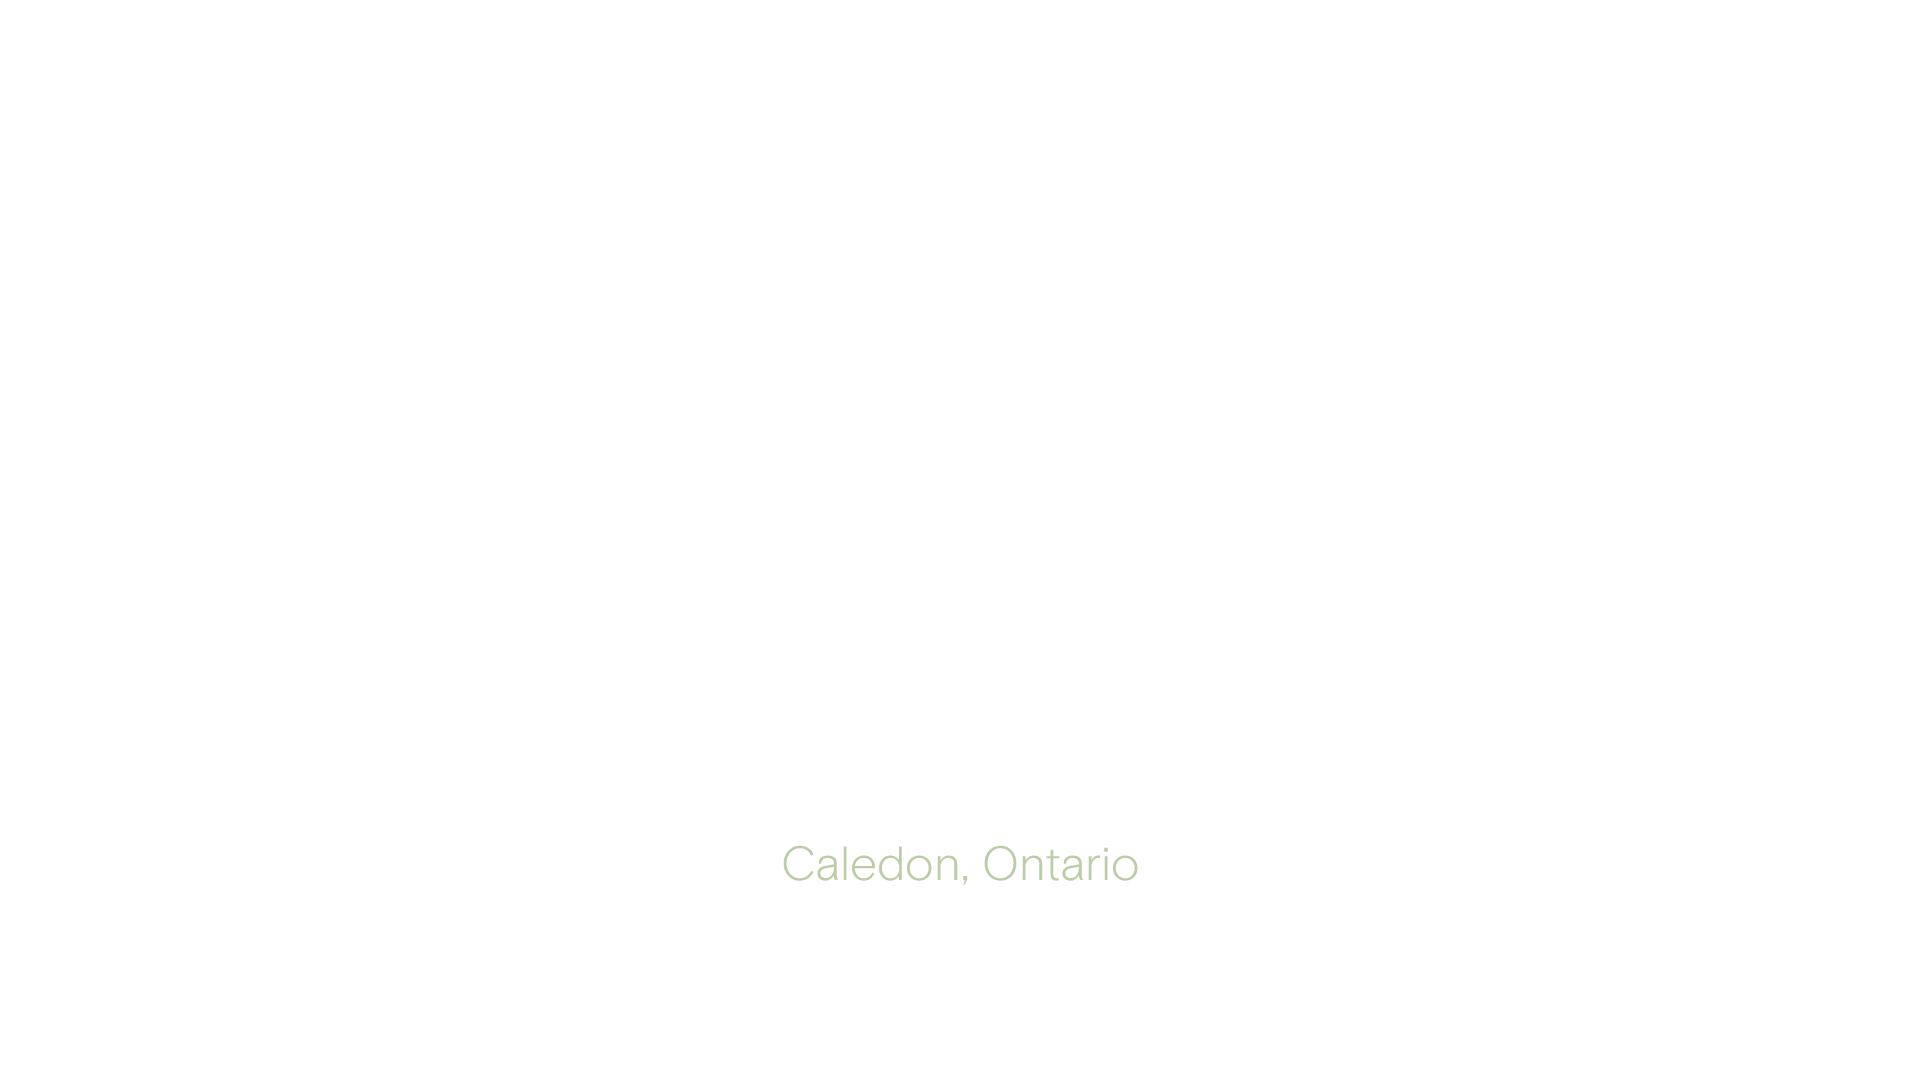 Summer Valley